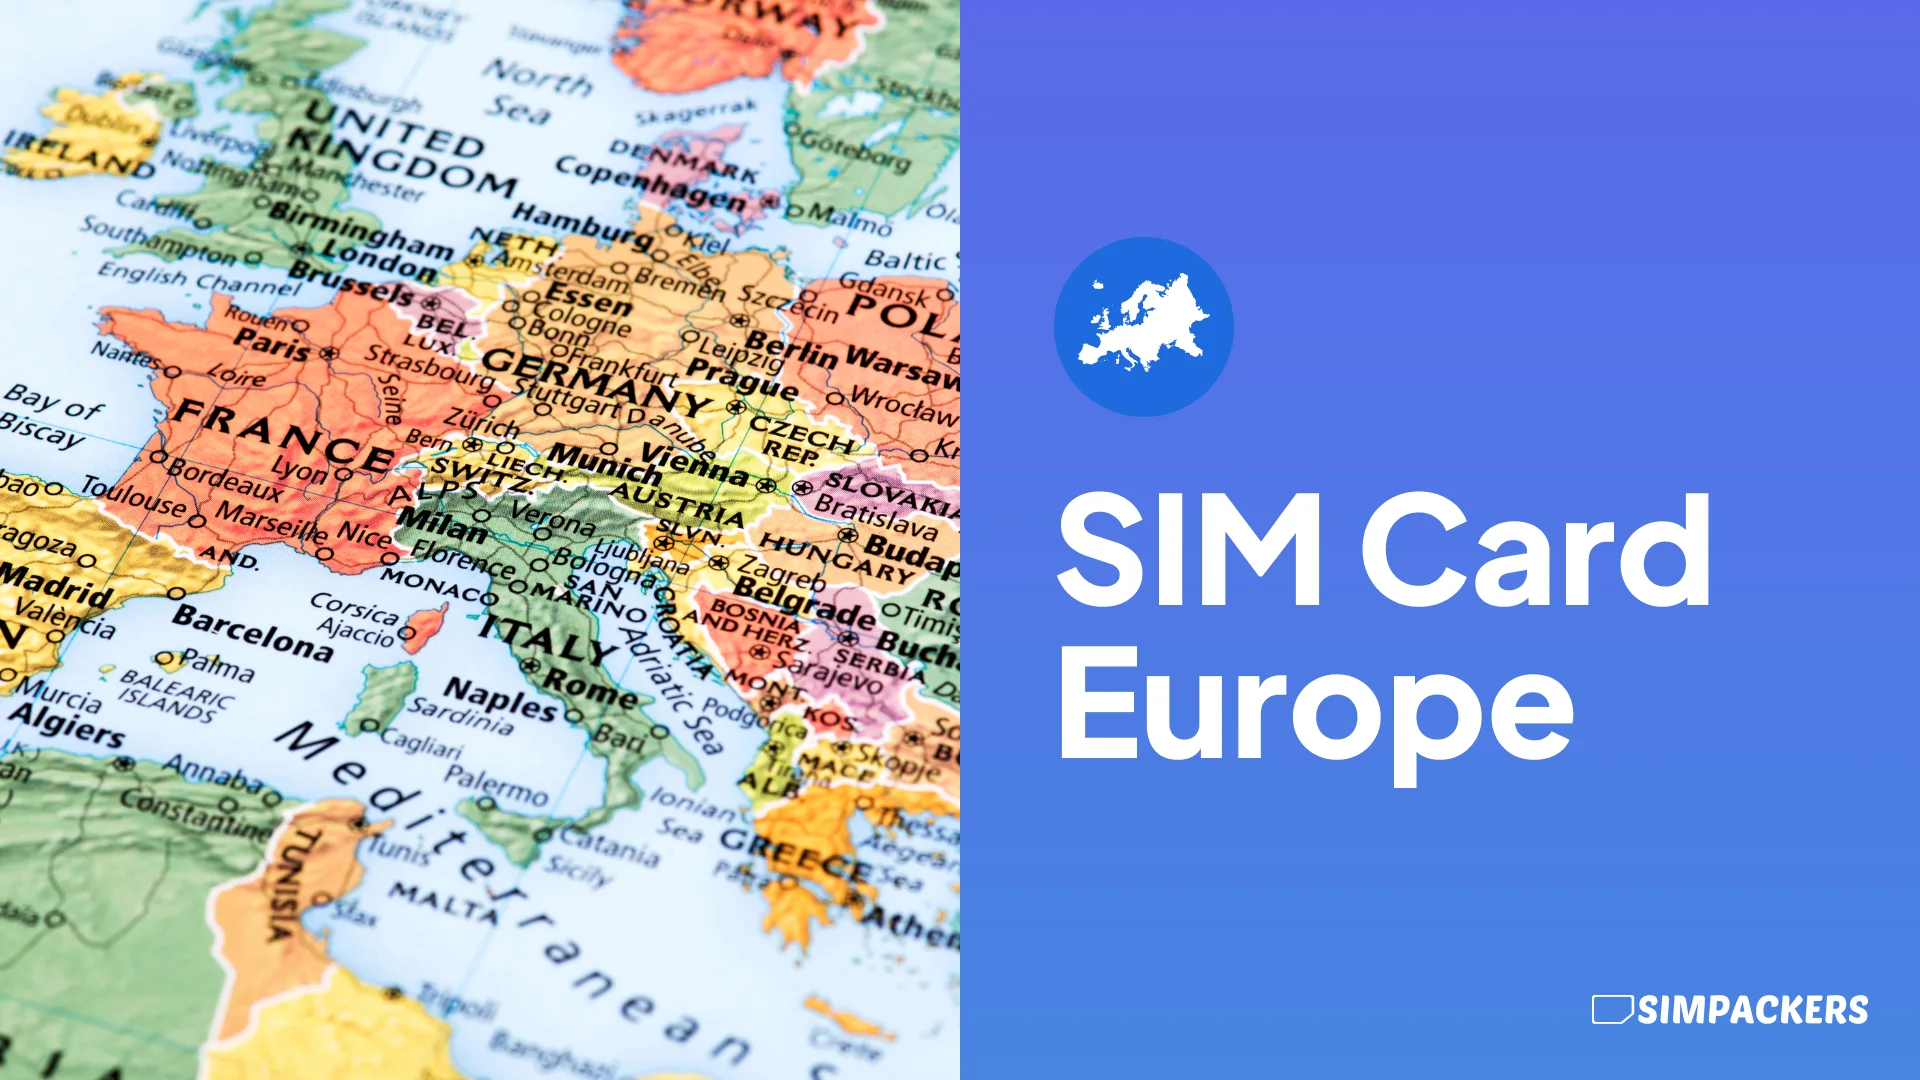 EN/FEATURED_IMAGES/sim-card-europe.webp